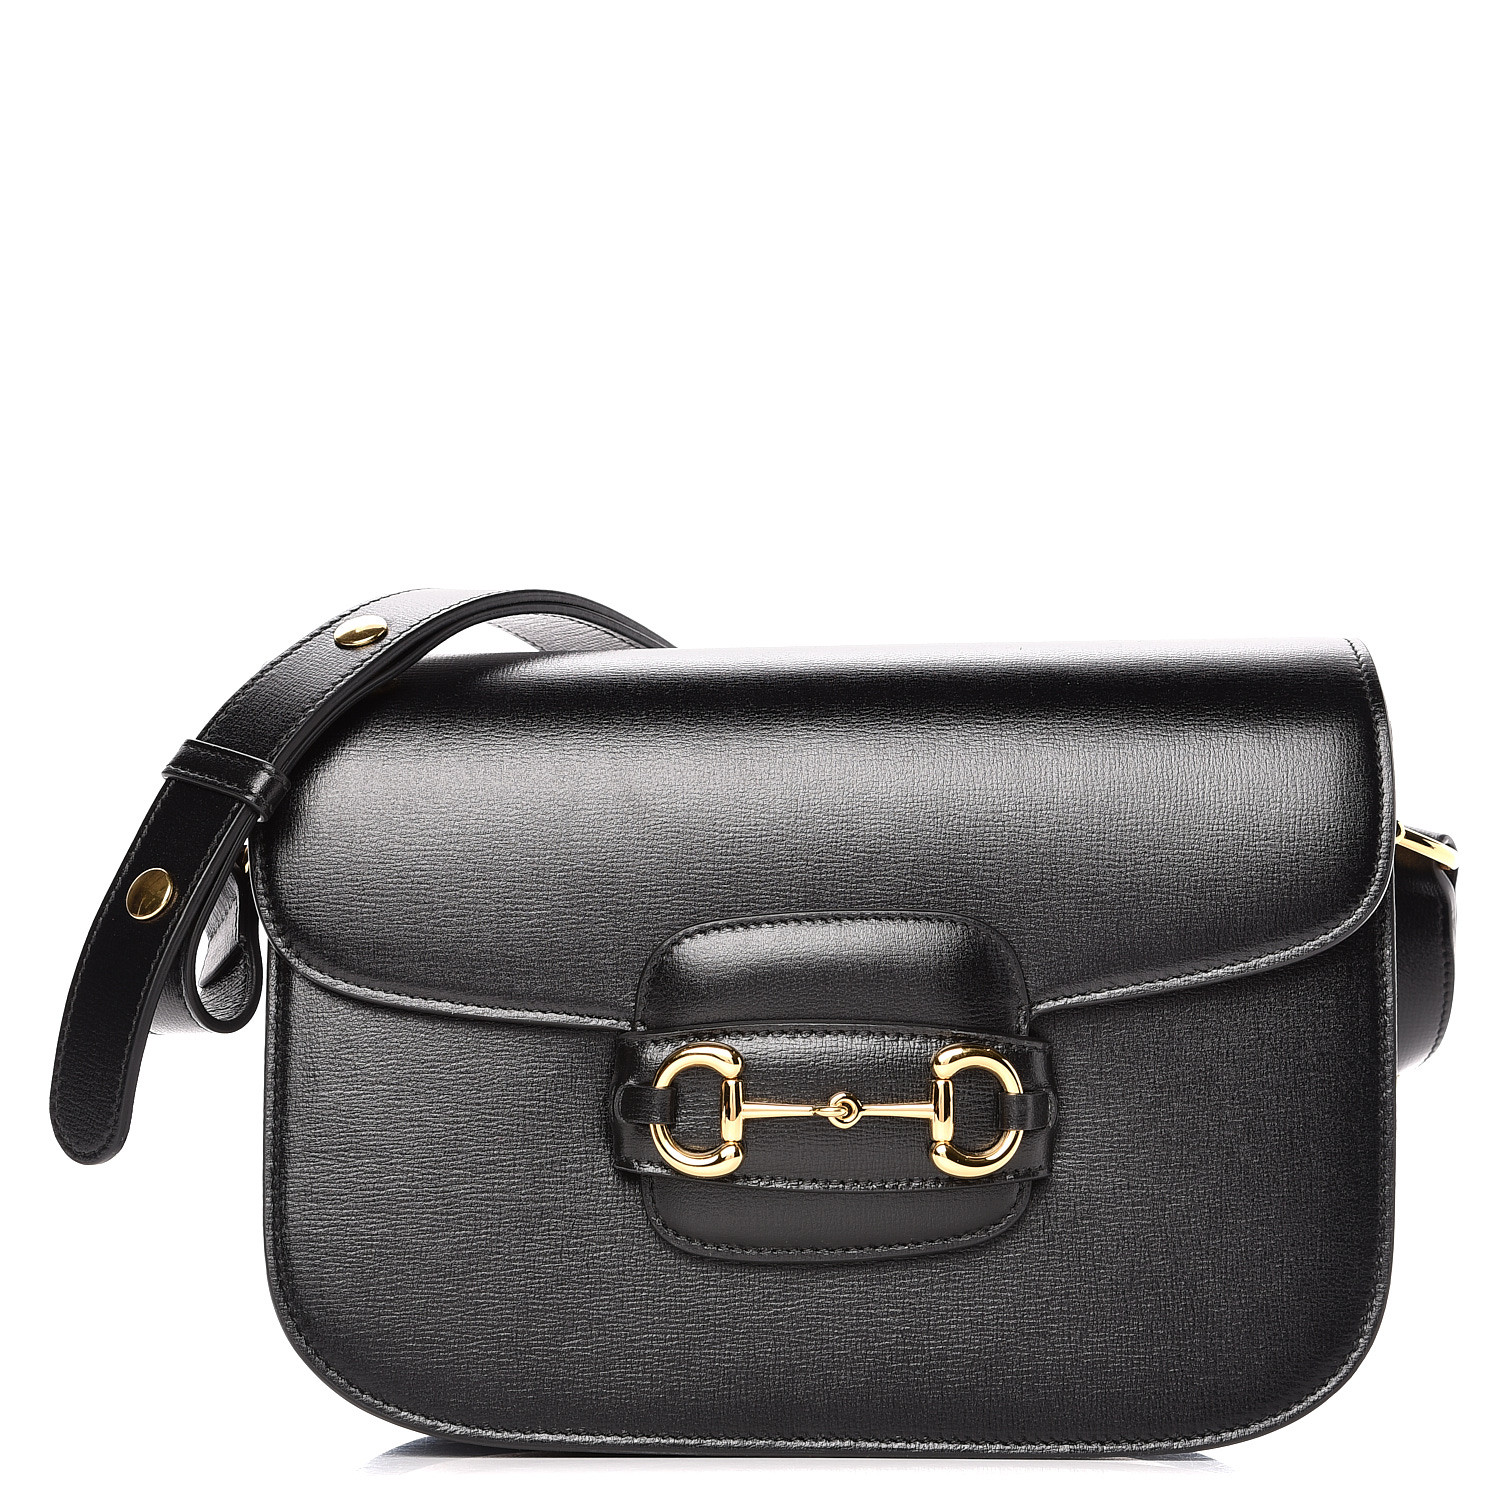 GUCCI Calfskin 1955 Horsebit Shoulder Bag Black 497712